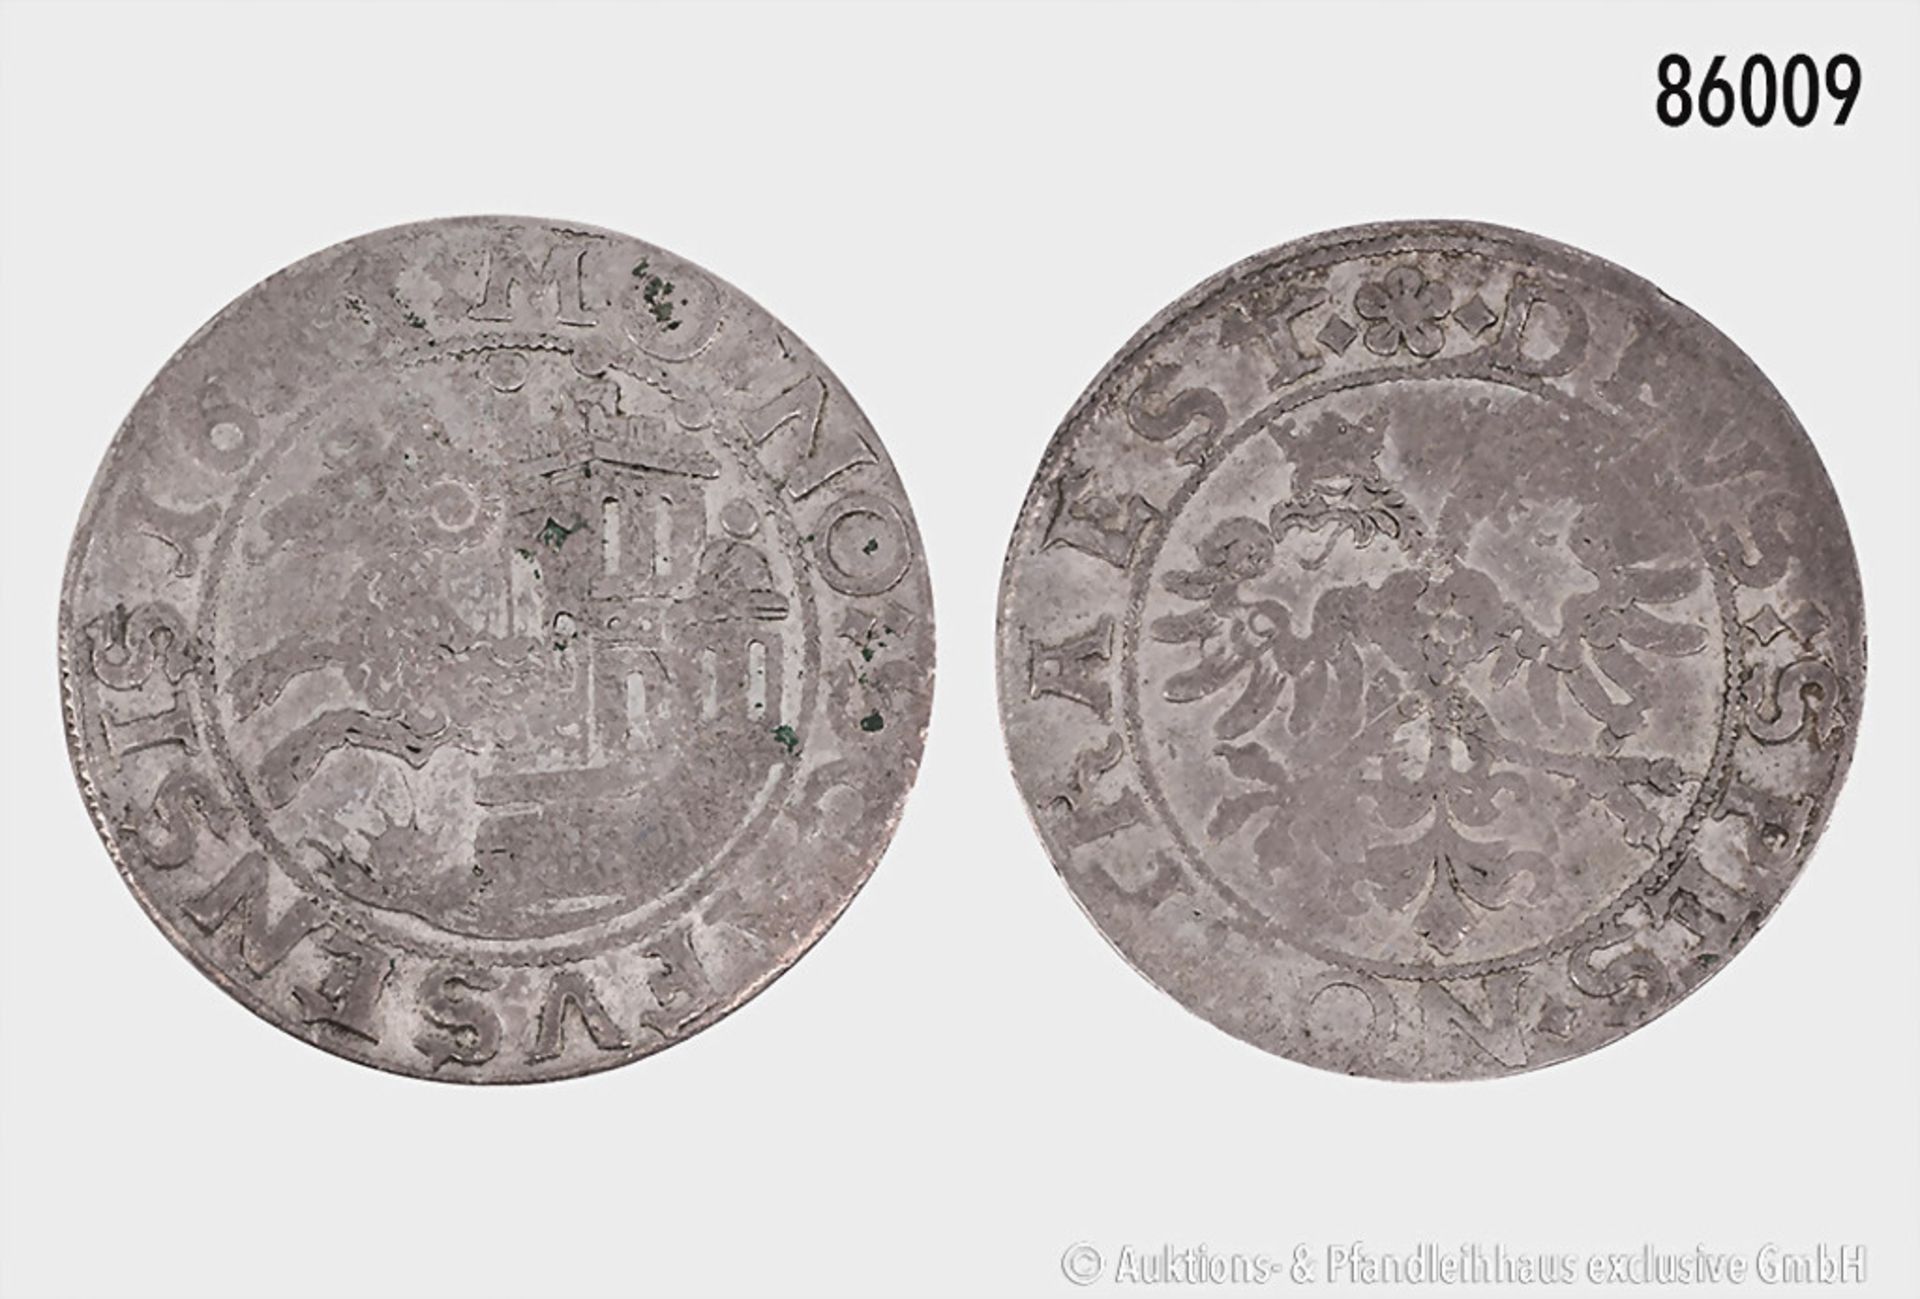 Schweiz, Schaffhausen, Dicken 1617 (?), 8,19 g, 30 mm, vgl. HMZ 2-765, Prägeschwächen, ...